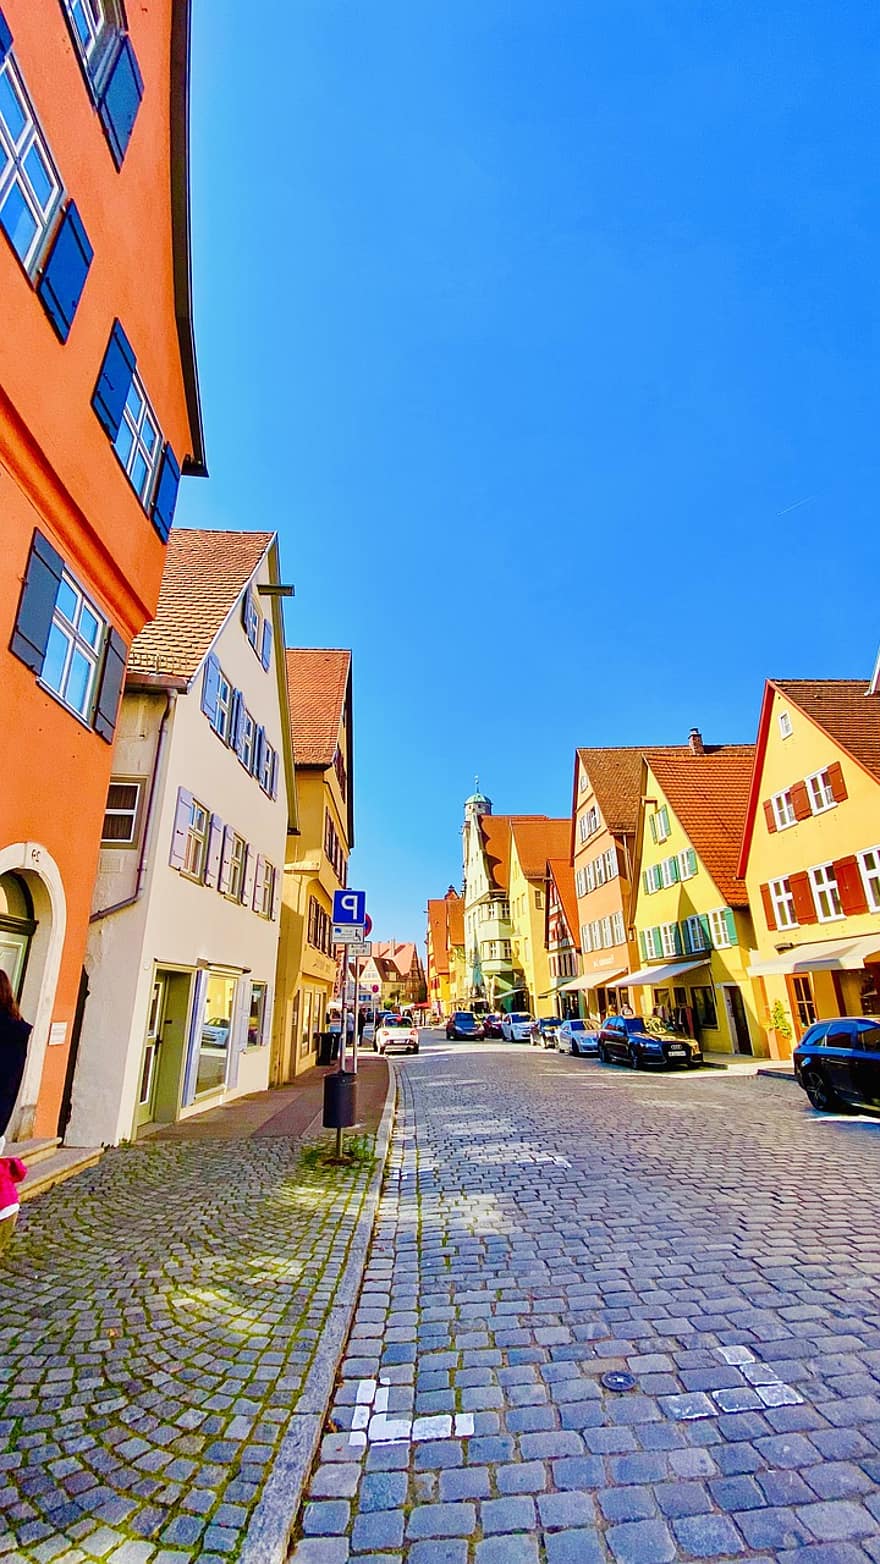 domy, ulice, Dinkelsbühl, Německo, budov, město, historický, chodník, silnice, venku